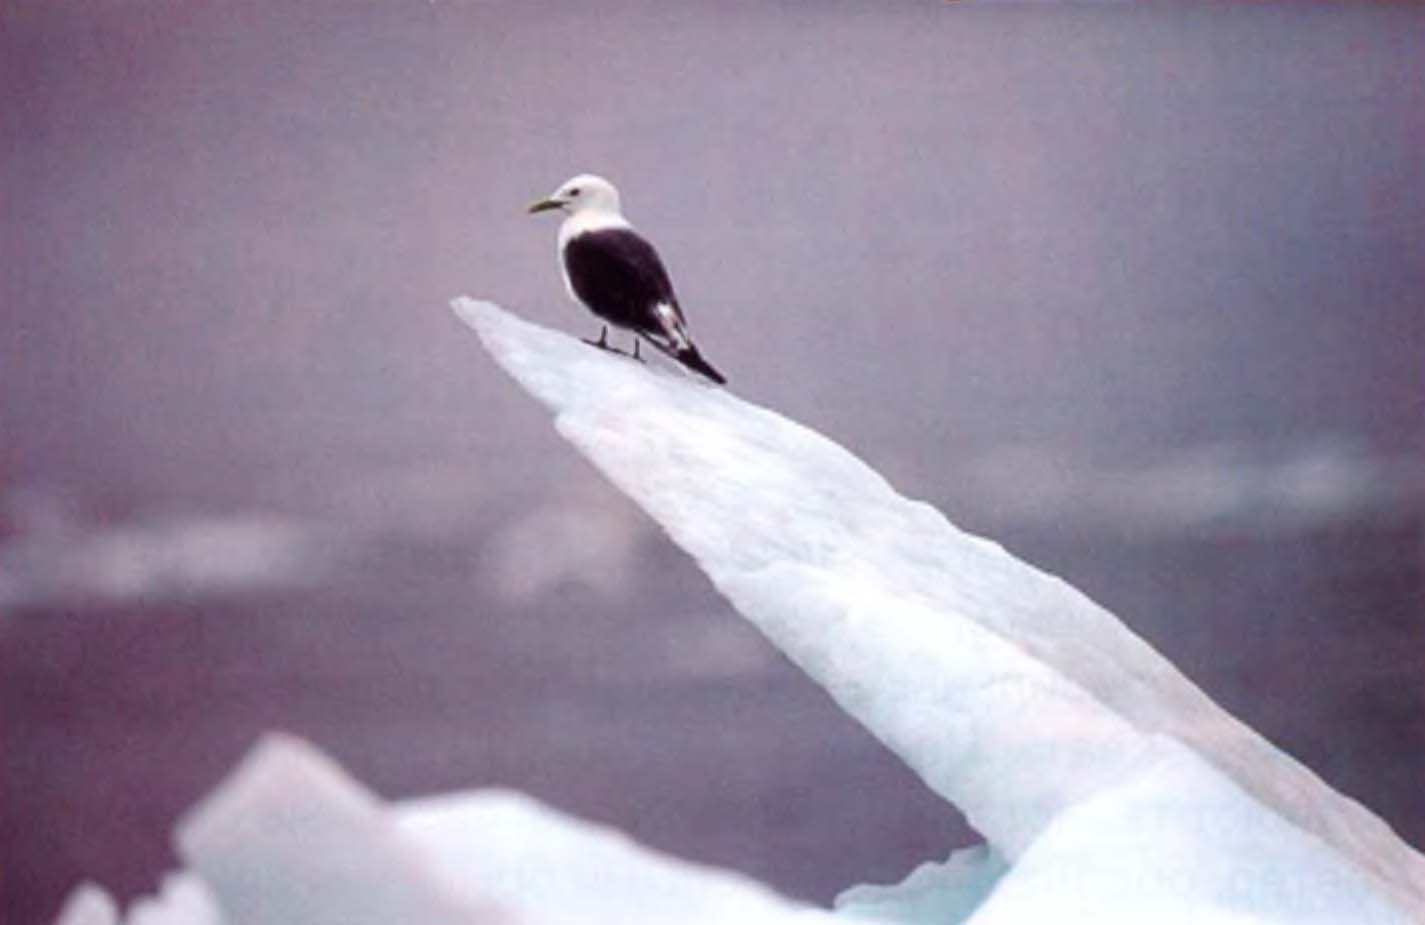 Арктический лед стремительно тает, вынуждая птиц покидать привычные места обитания.
